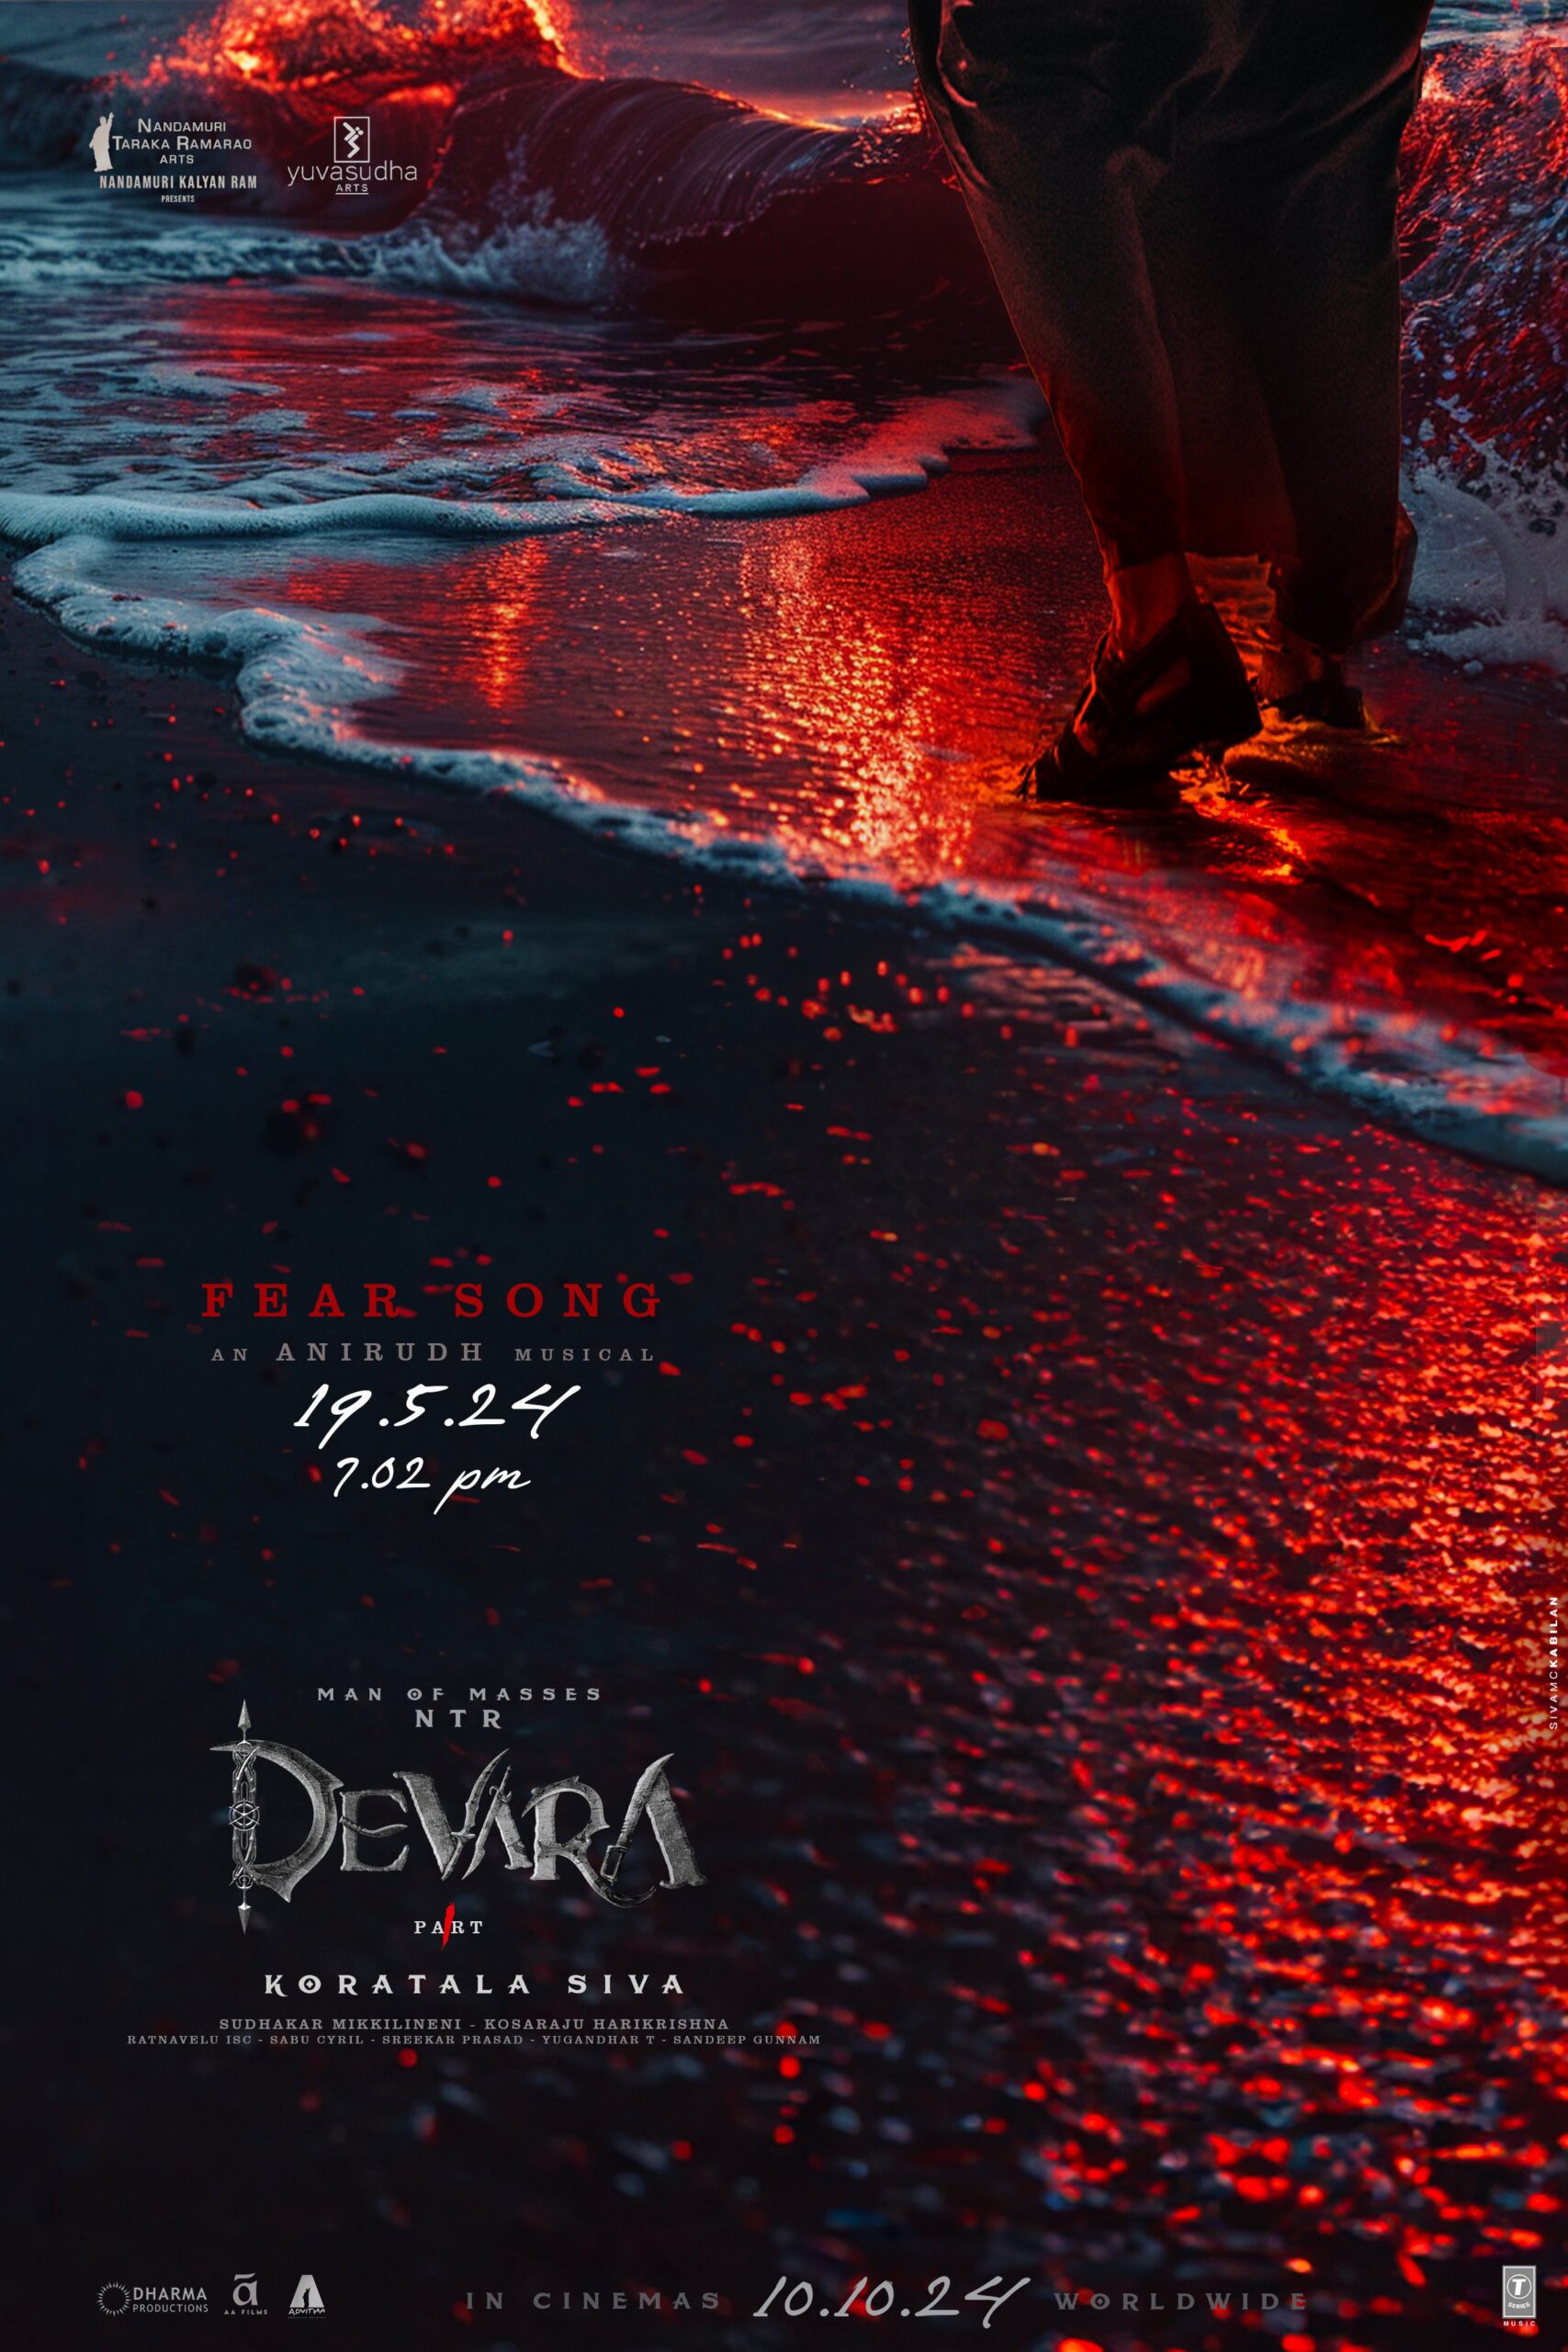 Devara: A blood bathtub